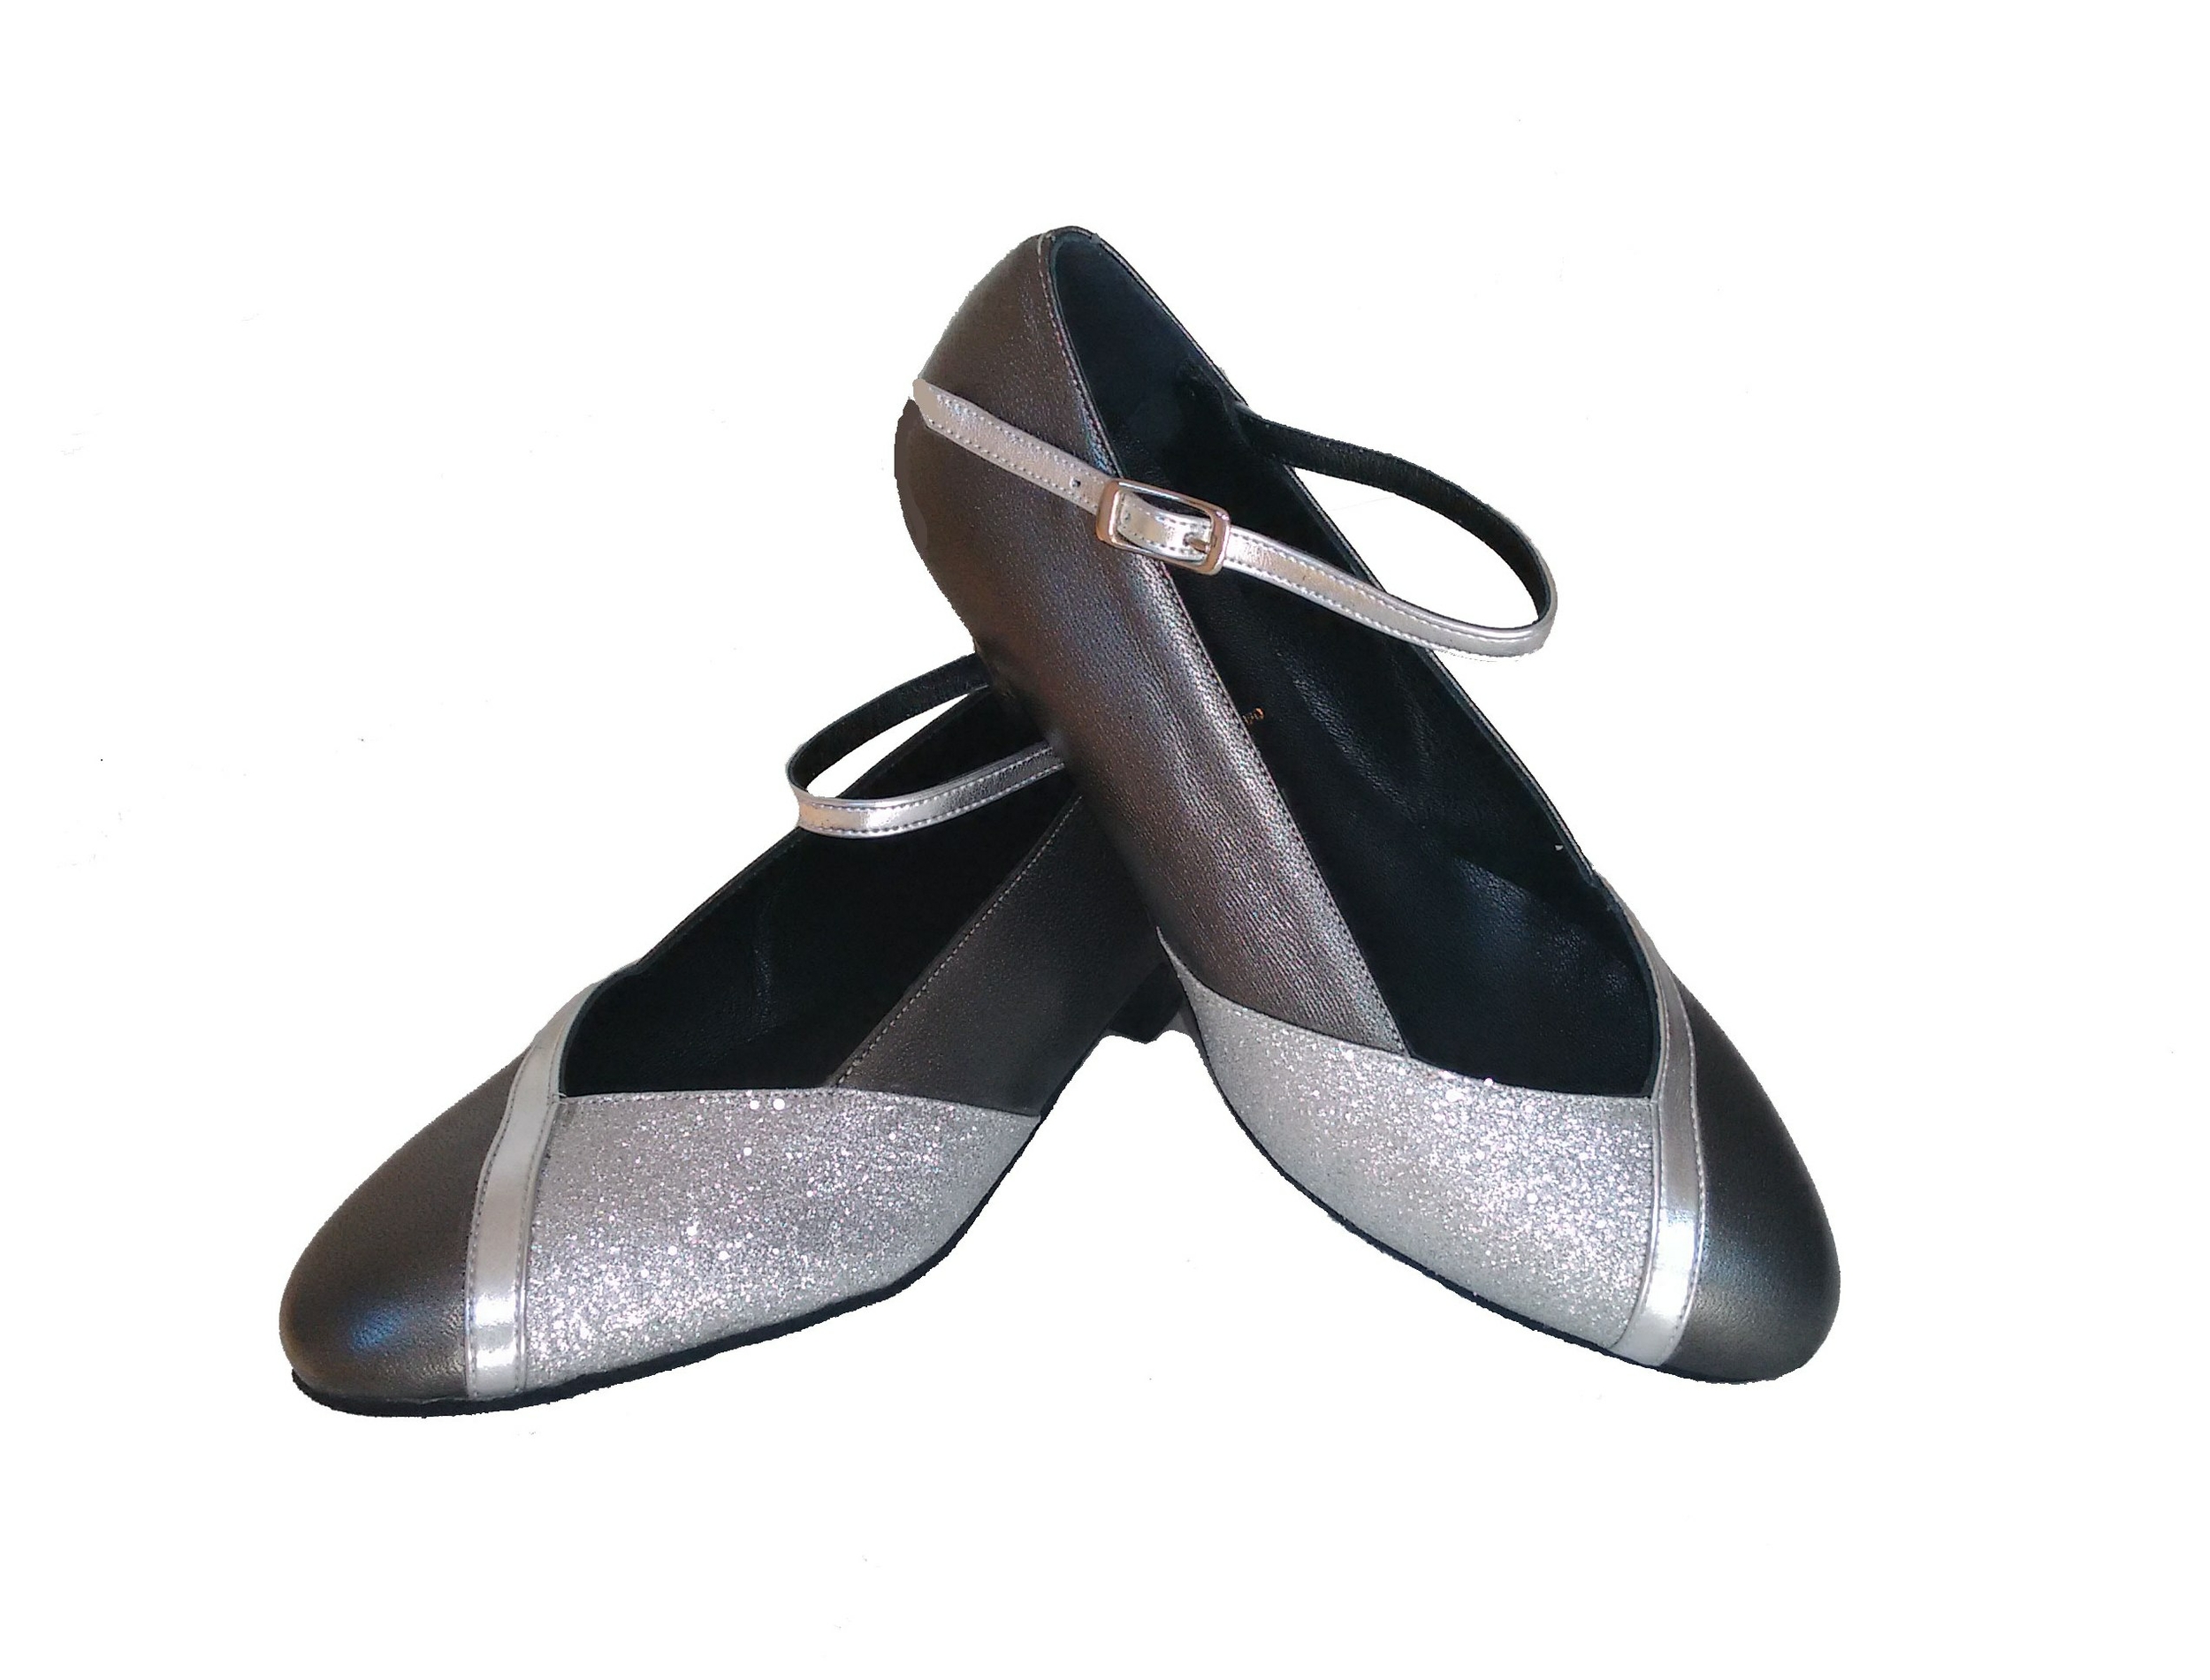 Chaussures de danse femme ELISA fermées cuir argent Talon 3cm